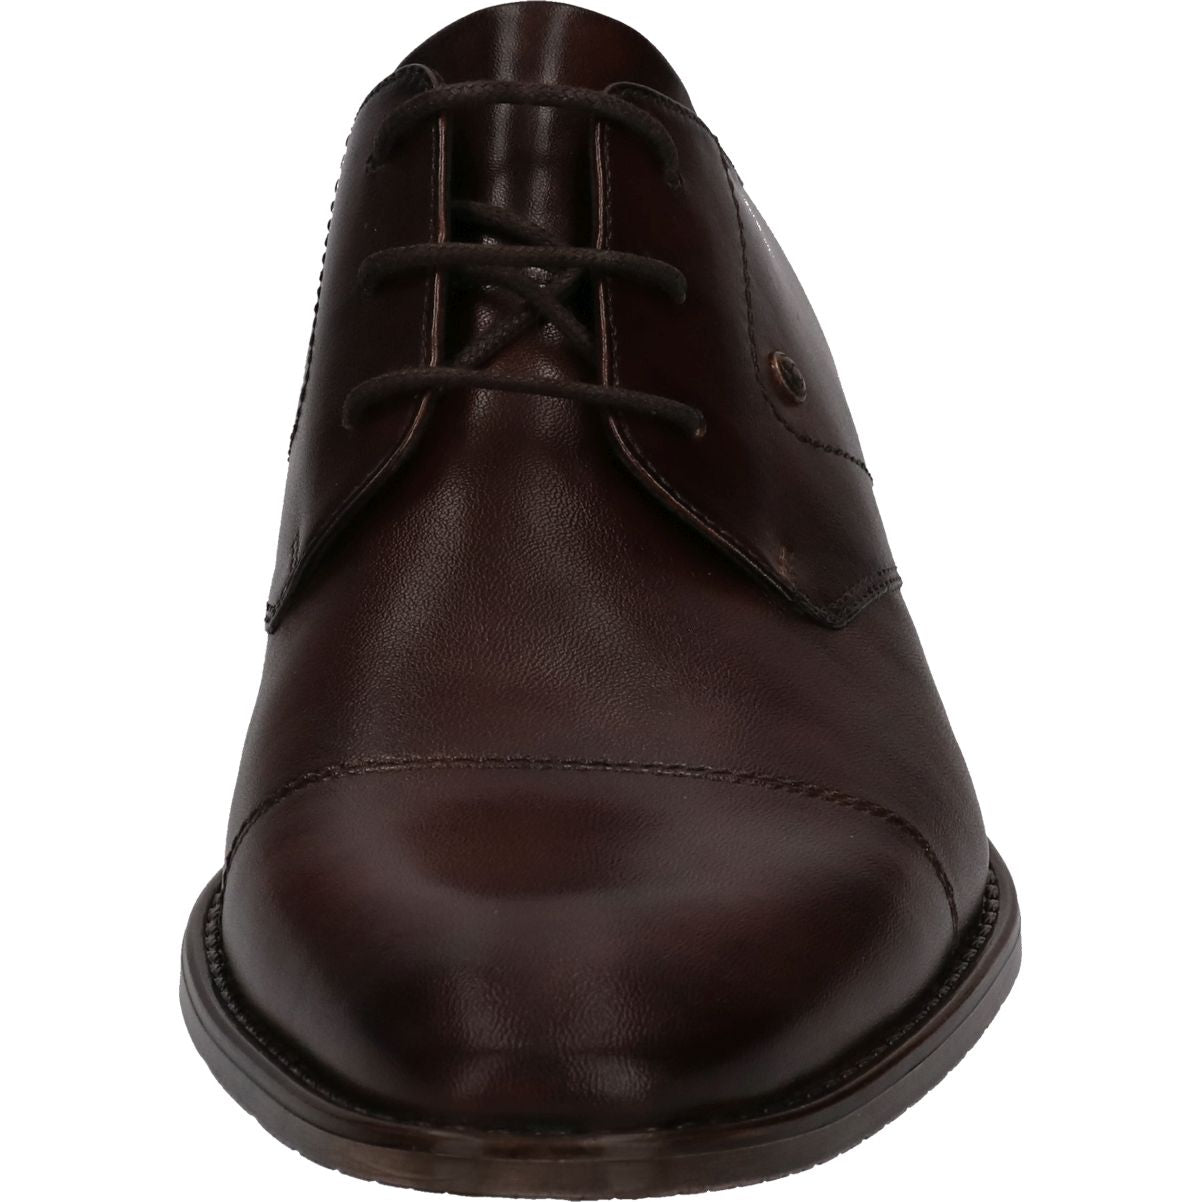 BUGATTI vyriški rudi klasikiniai batai Rinaldo Eco formal